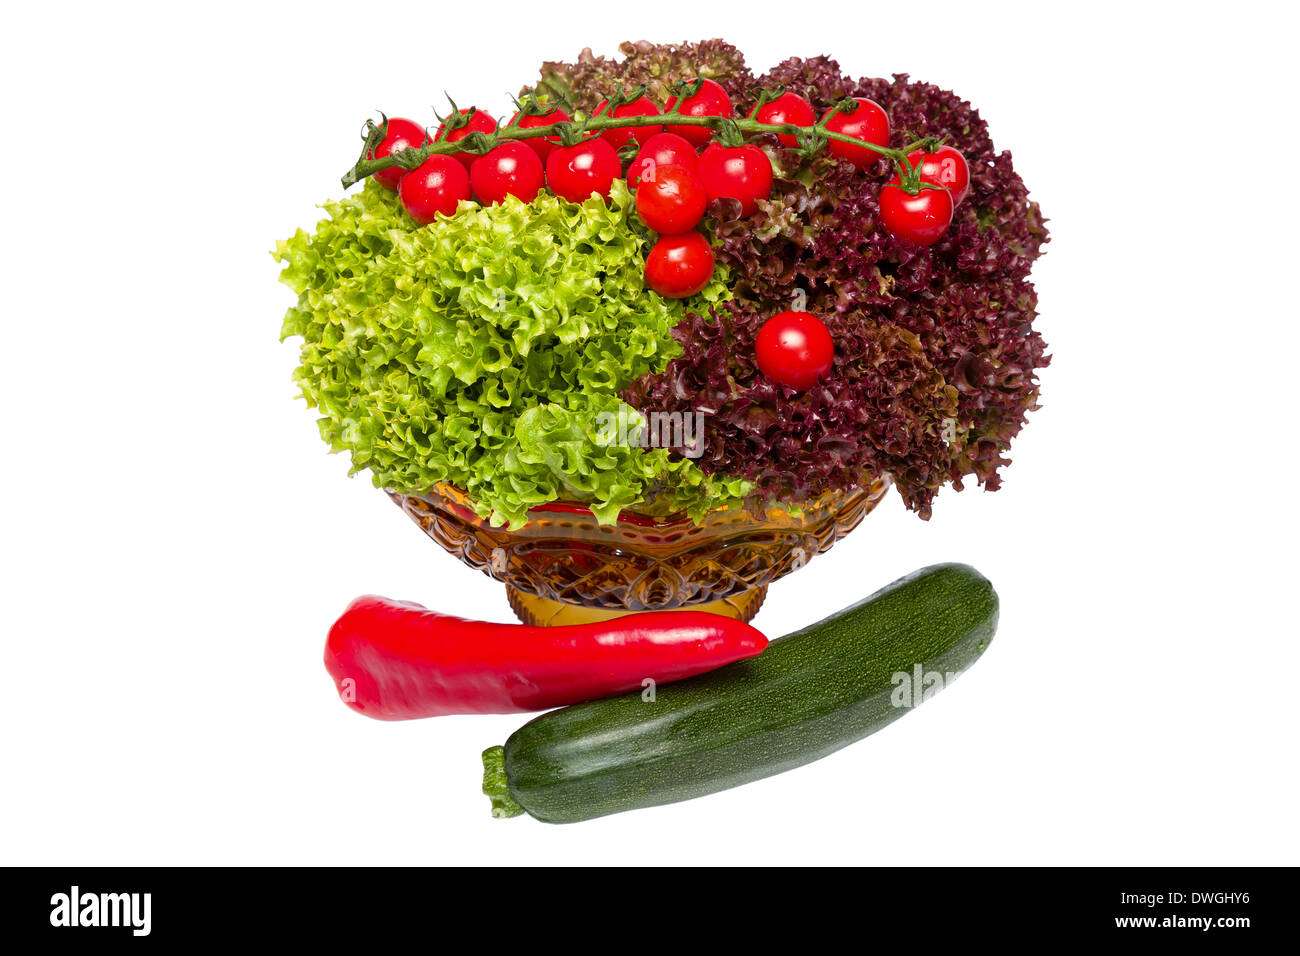 Les légumes crus frais comme la base d'un mode de vie sain Banque D'Images